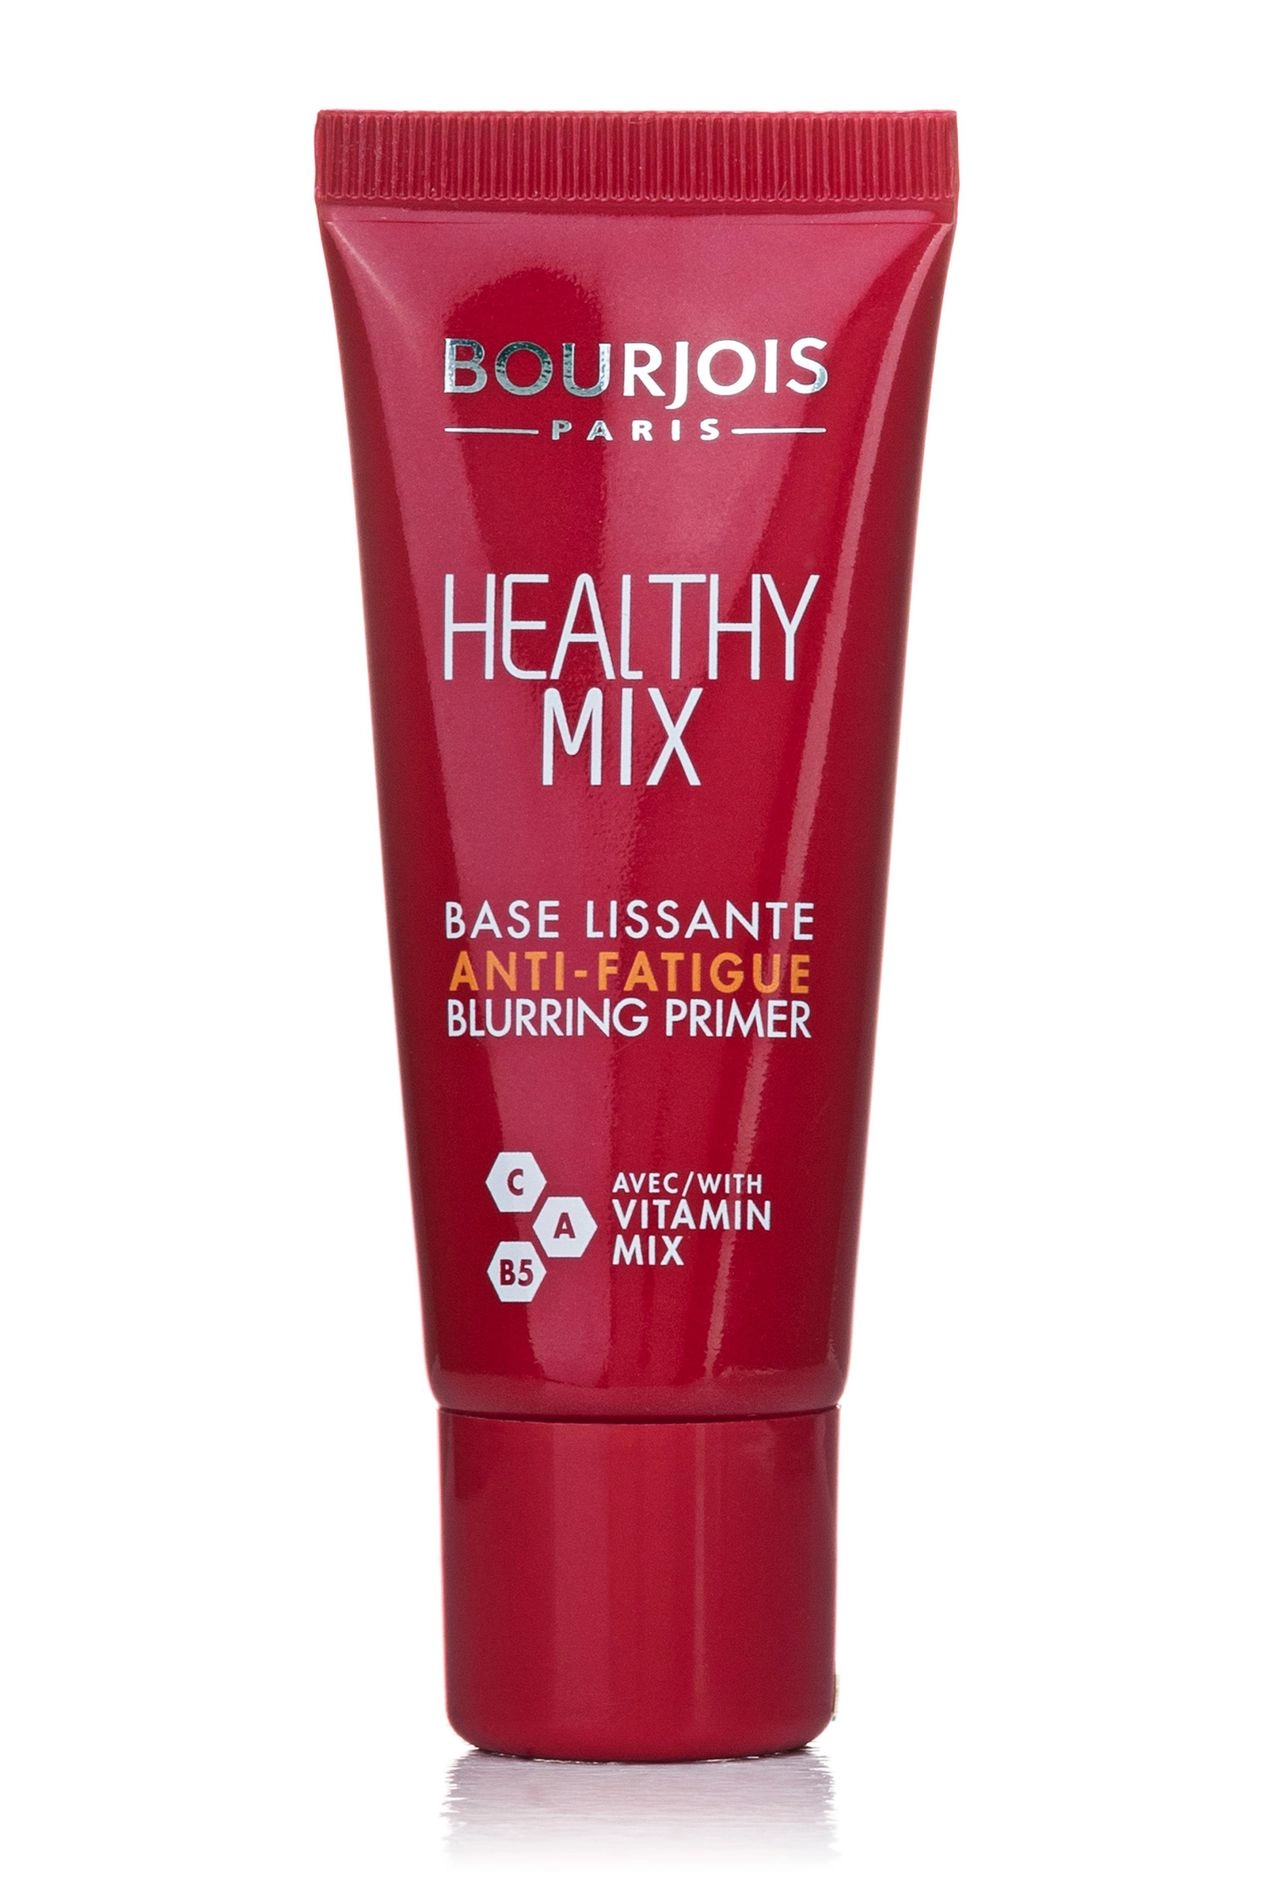 Bourjois Праймер для обличчя Healthy Mix Вітамінне сяйво, проти слідів втоми, з вітамінним міксом, 20 мл - фото N1